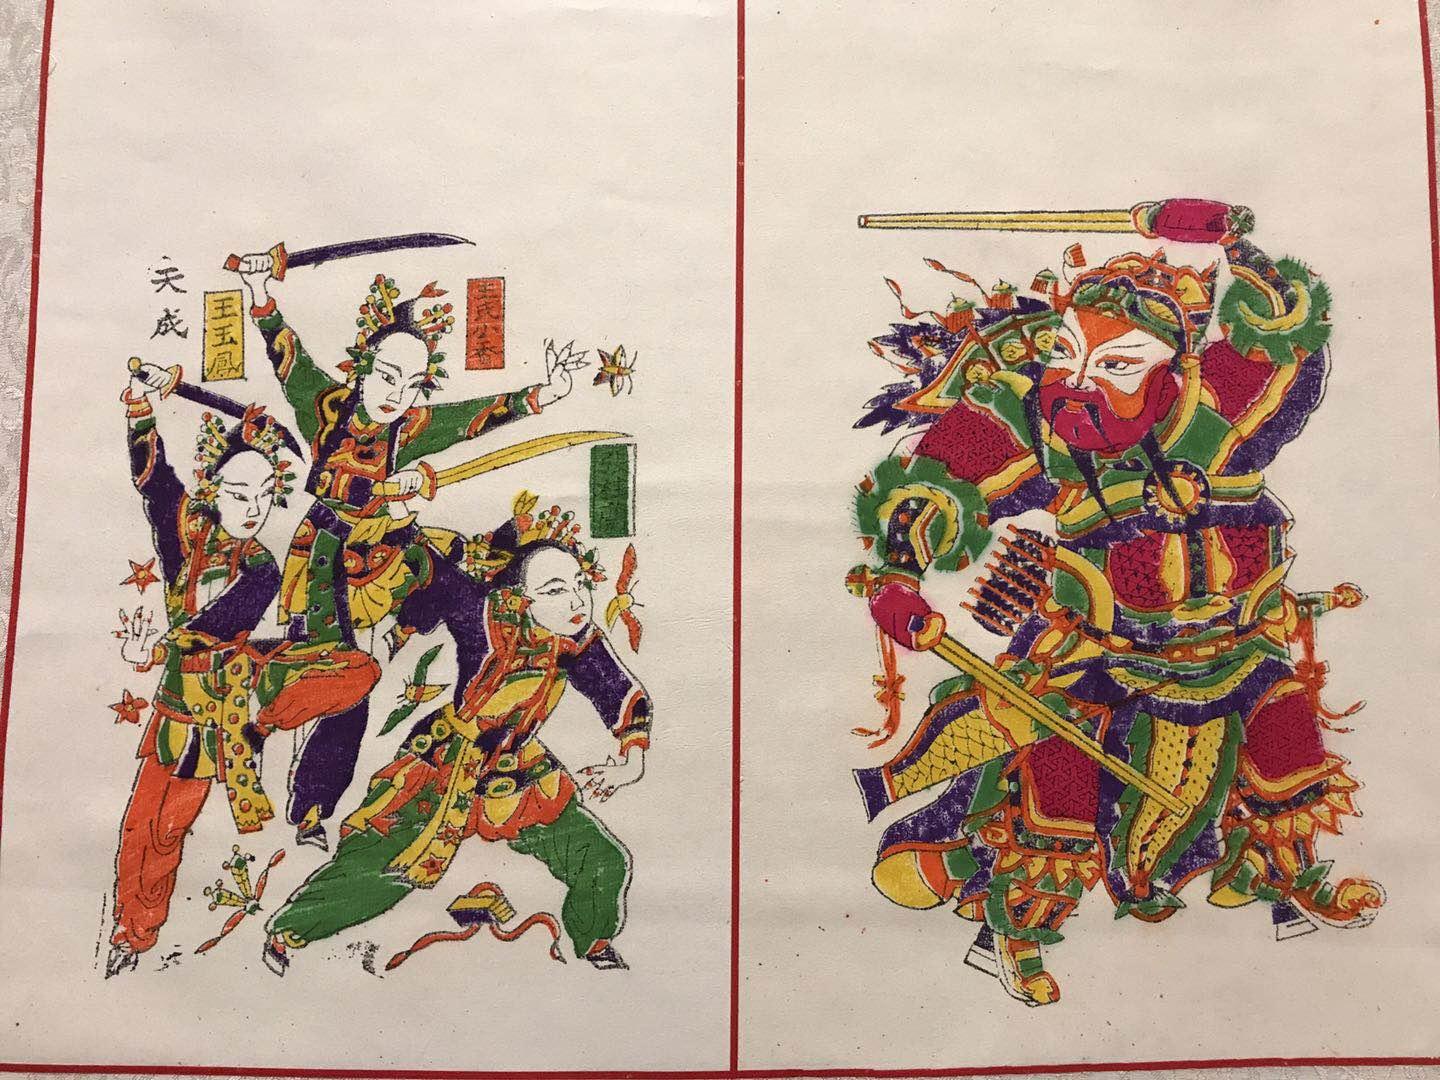 开封朱仙镇木版年画,传统艺术的结晶